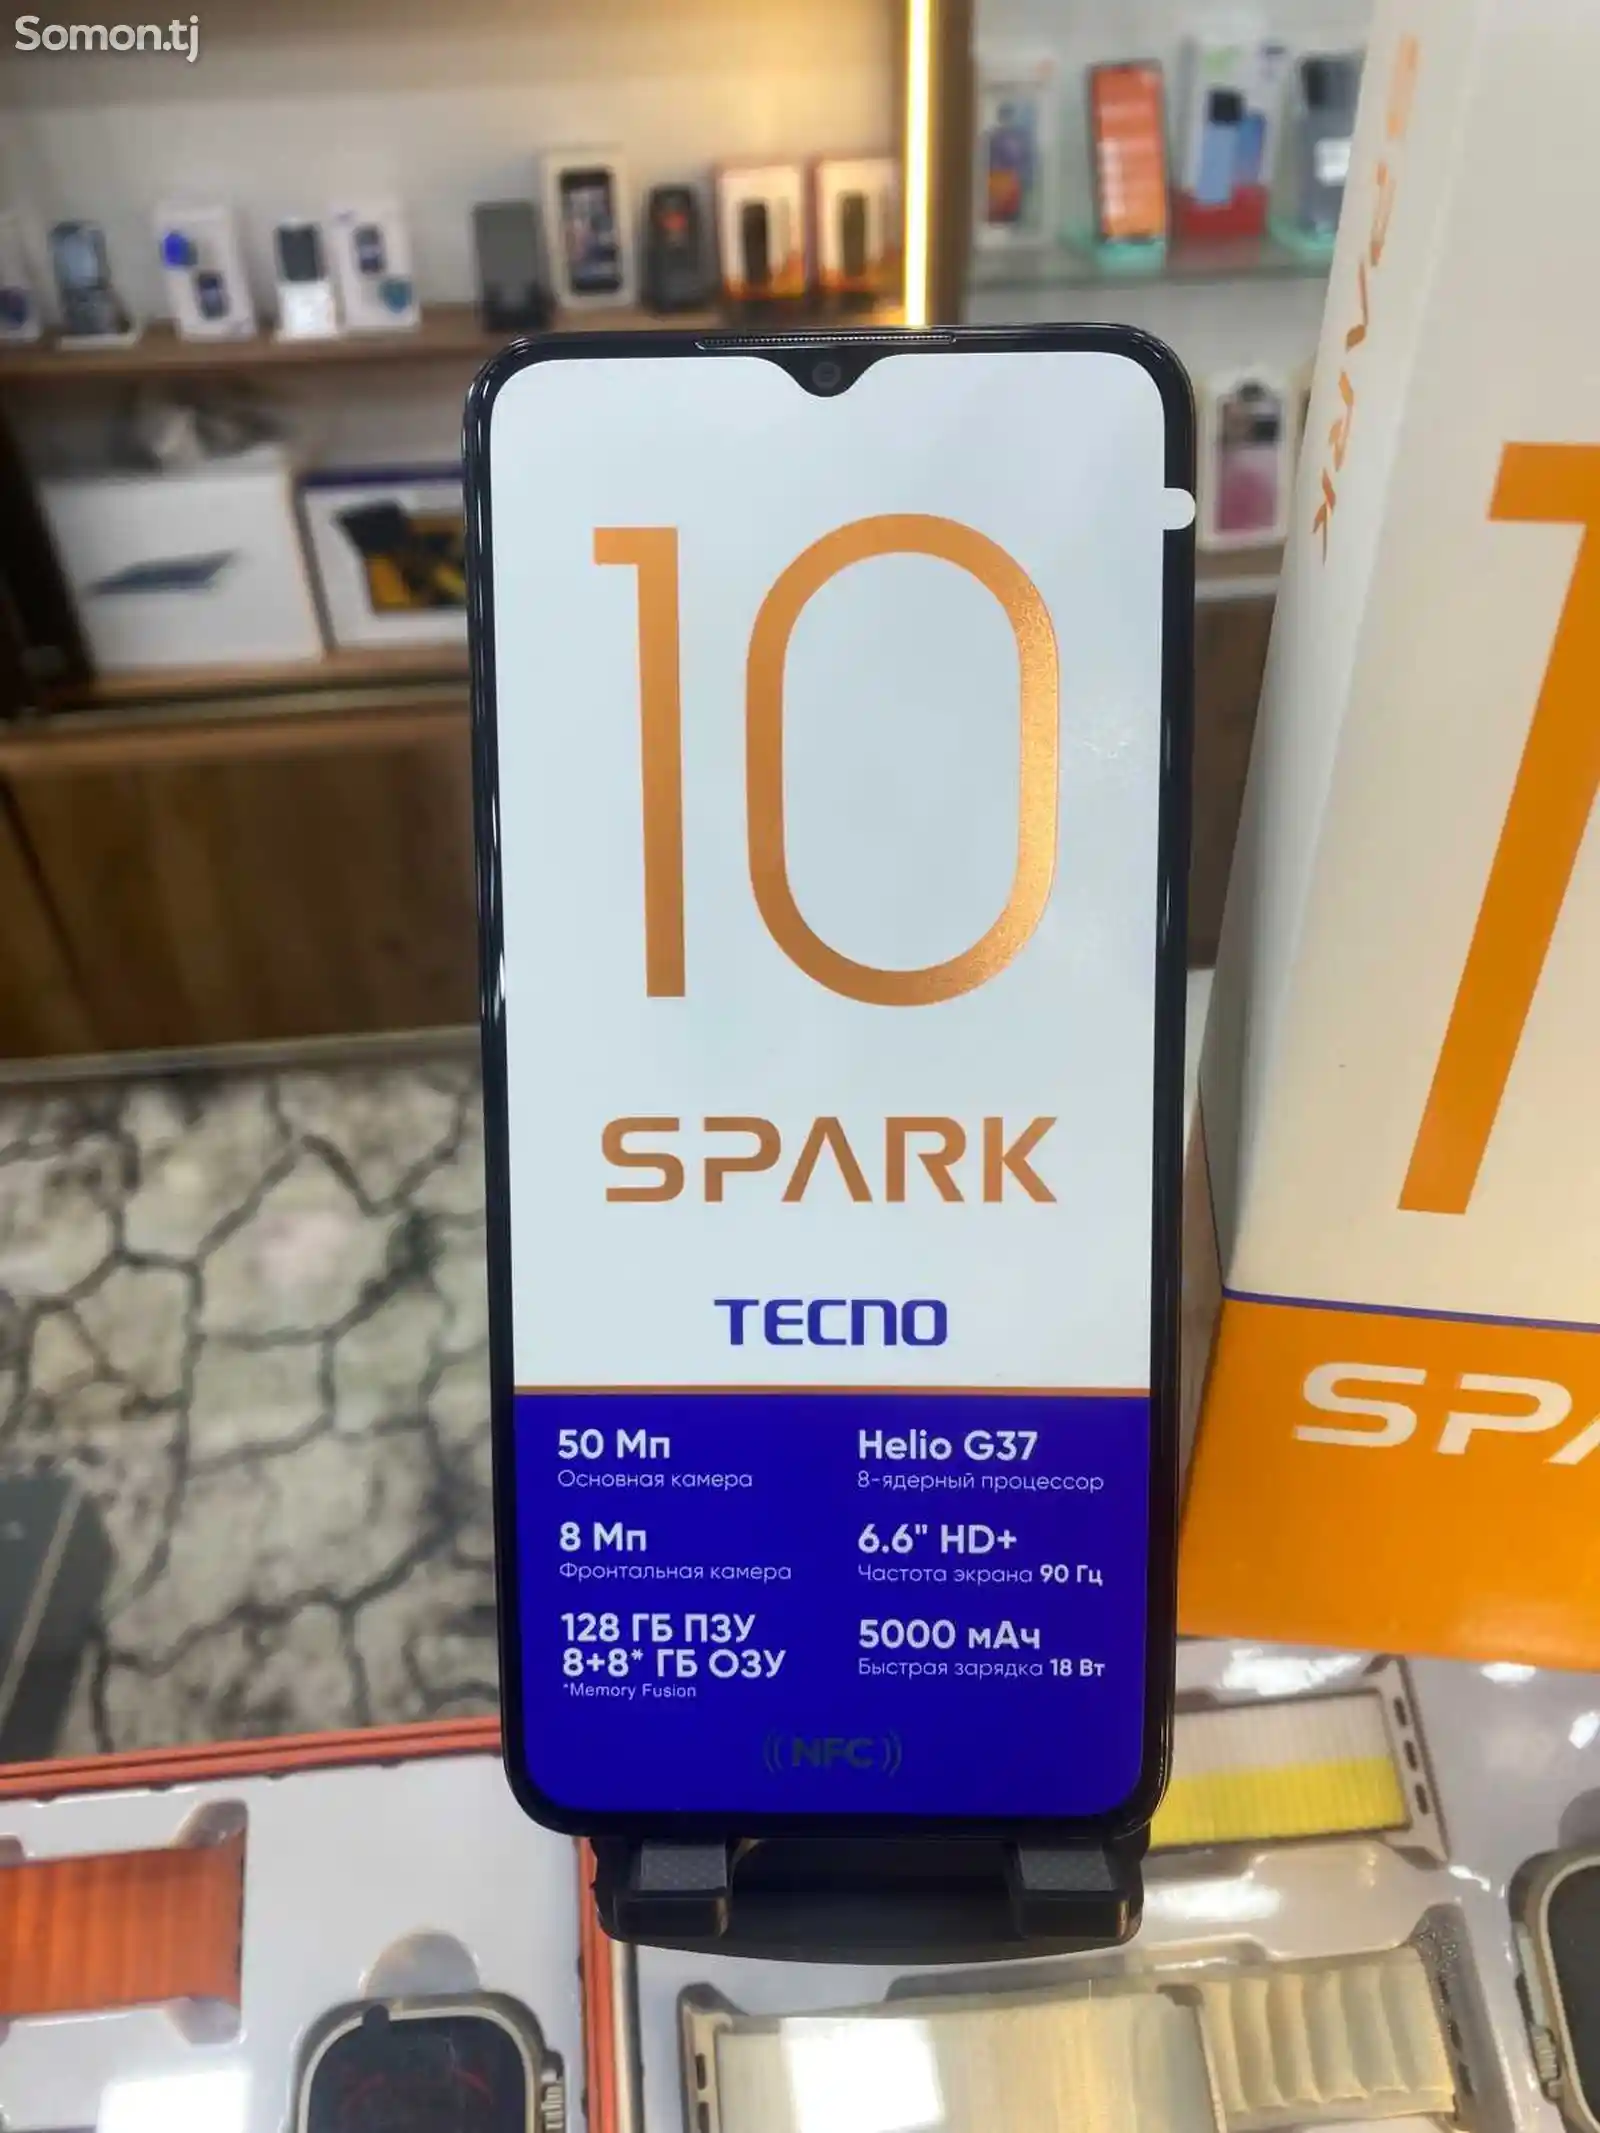 Tecno Spark 10 8+8/128GB-2